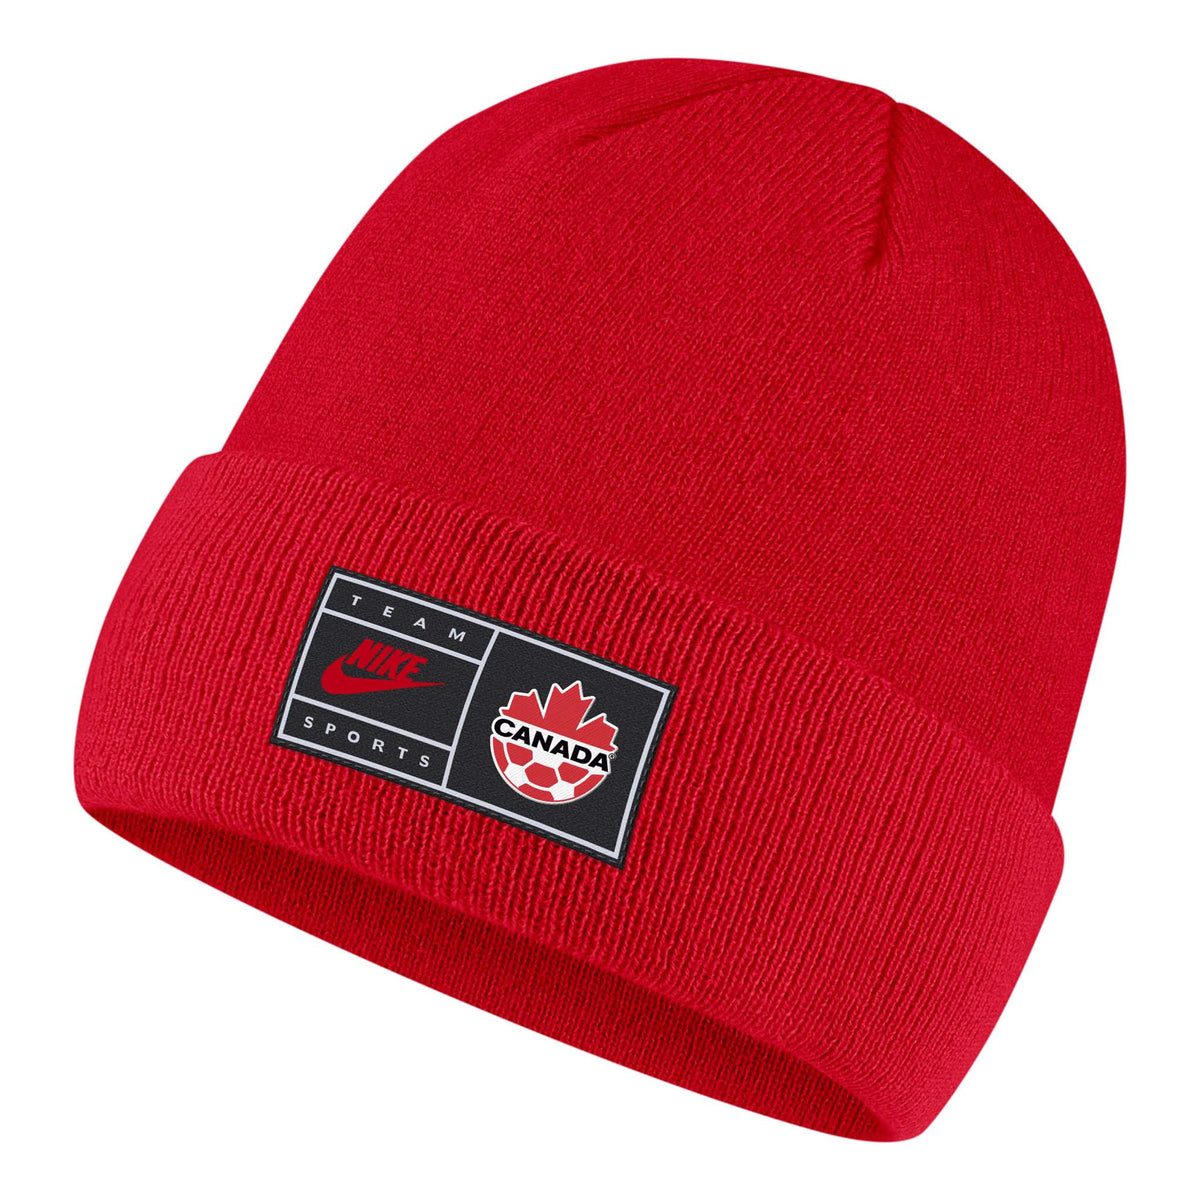 Team Canada Soccer Nike Cuffed Beanie tuque à revers rouge